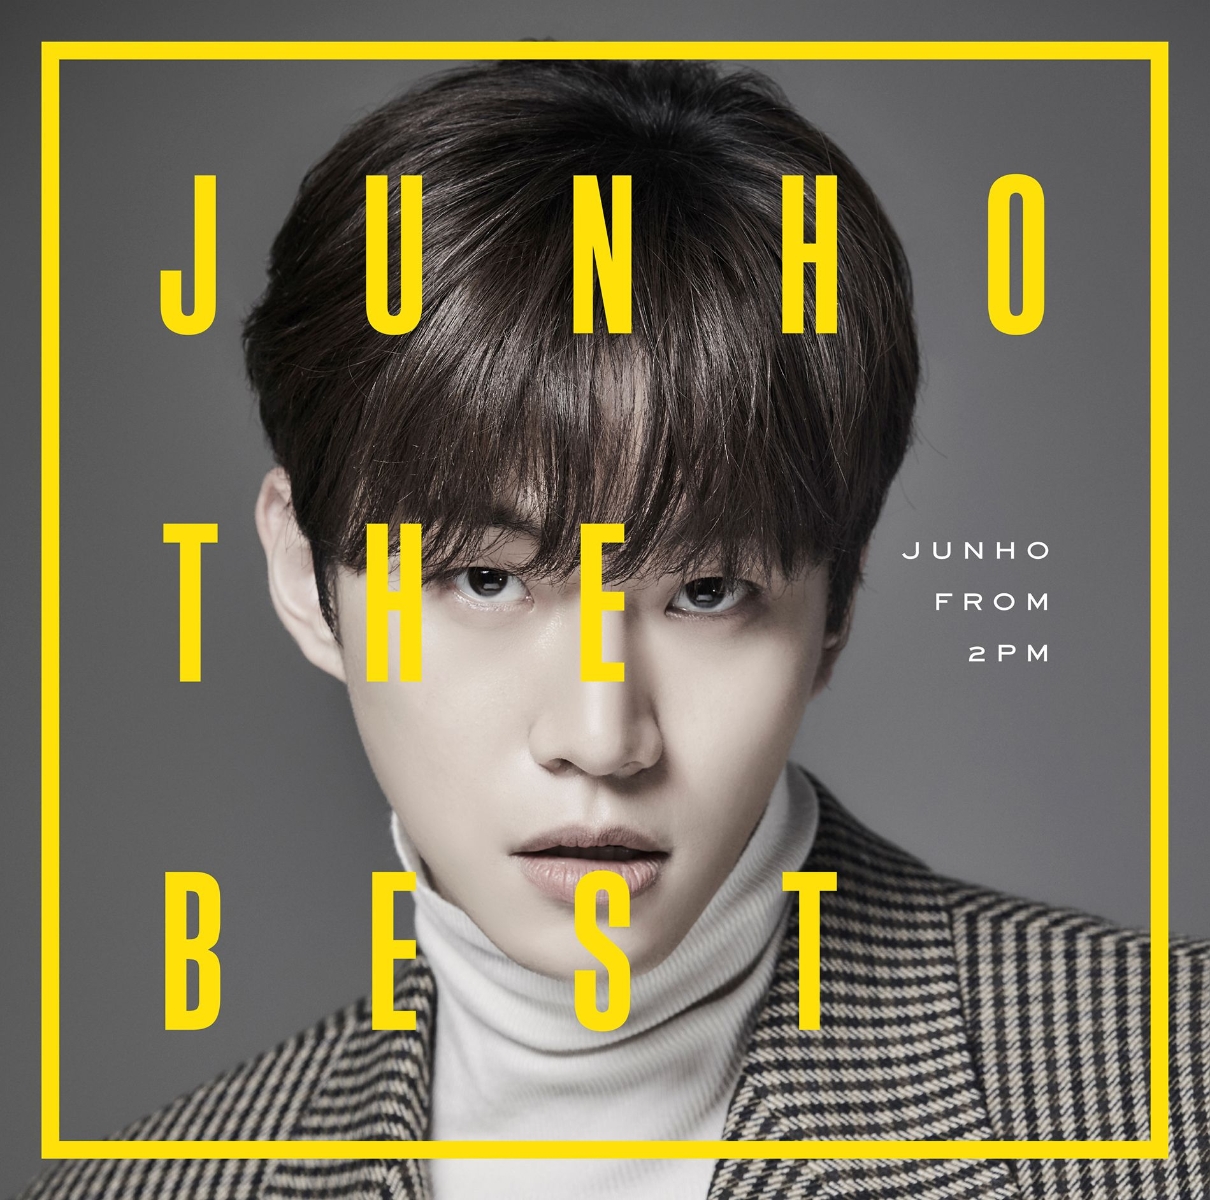 楽天ブックス: JUNHO THE BEST - JUNHO (From 2PM) - 4547366383034 : CD